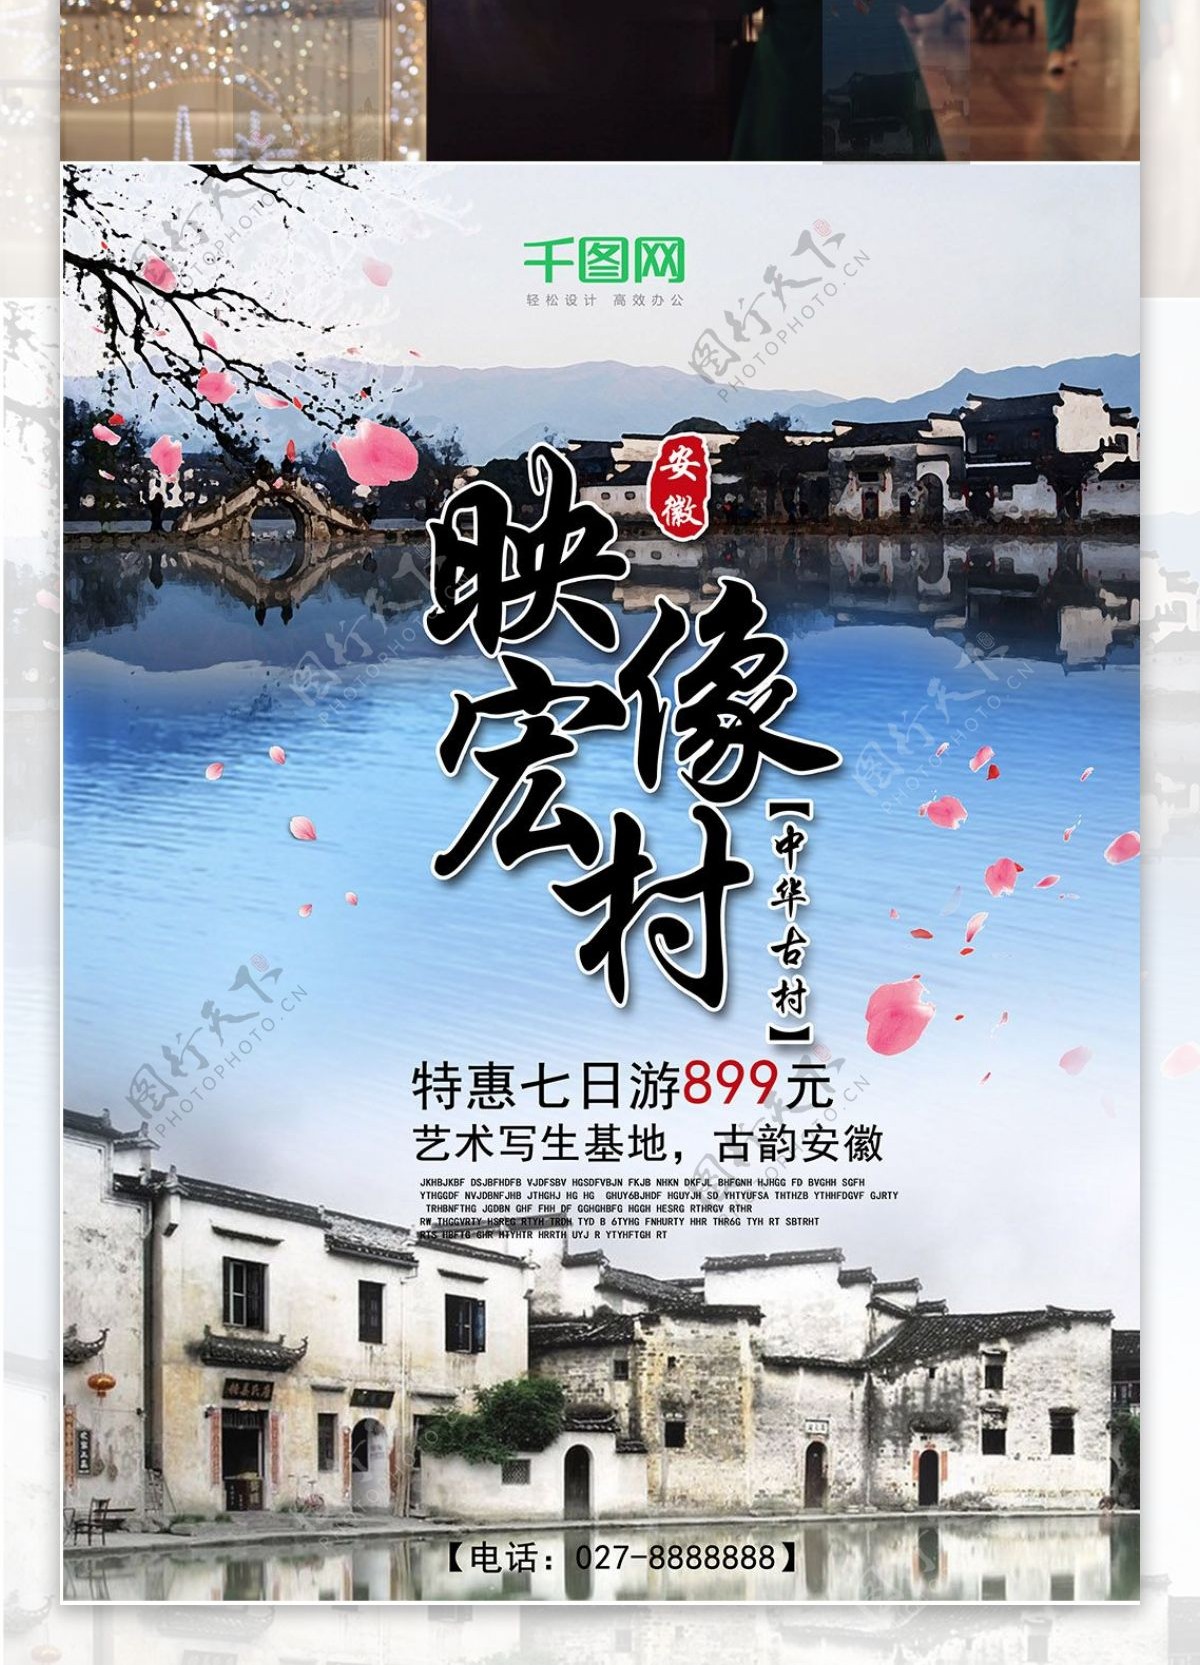 映像宏村写生特价旅游优惠活动海报设计